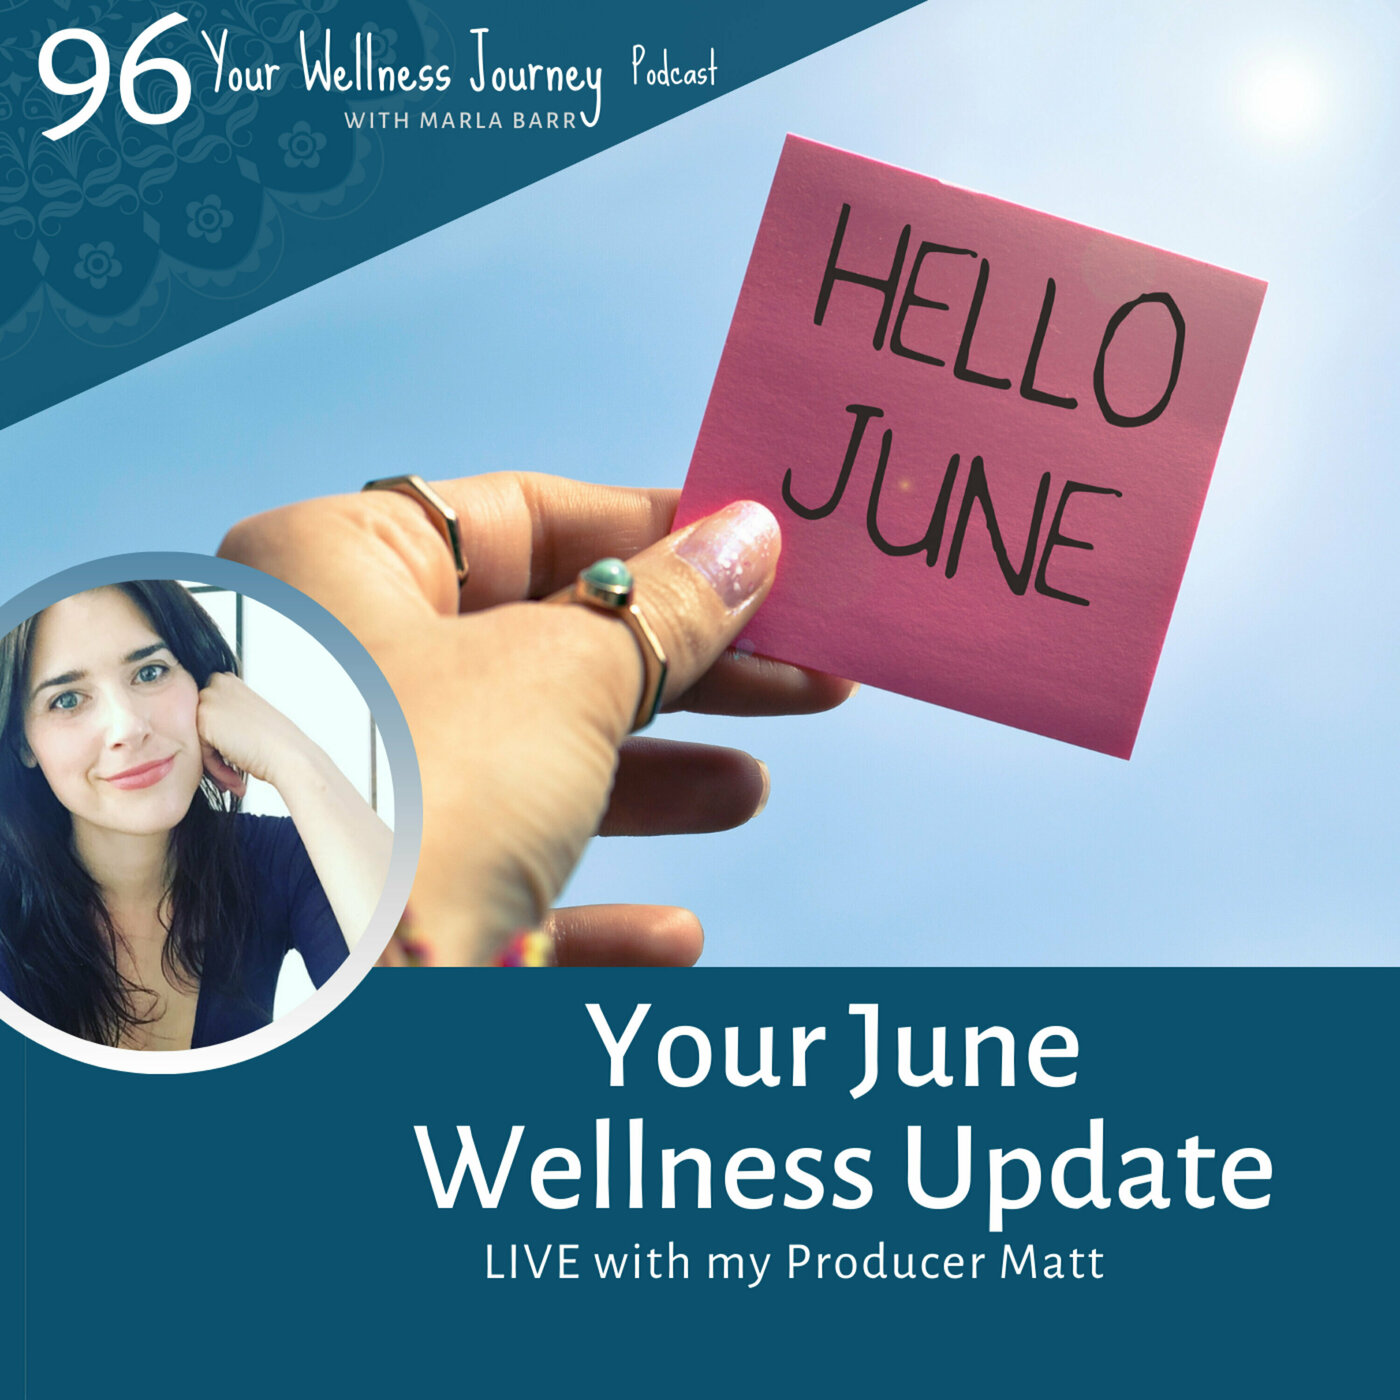 The June Wellness Update: Live with My Producer Matt